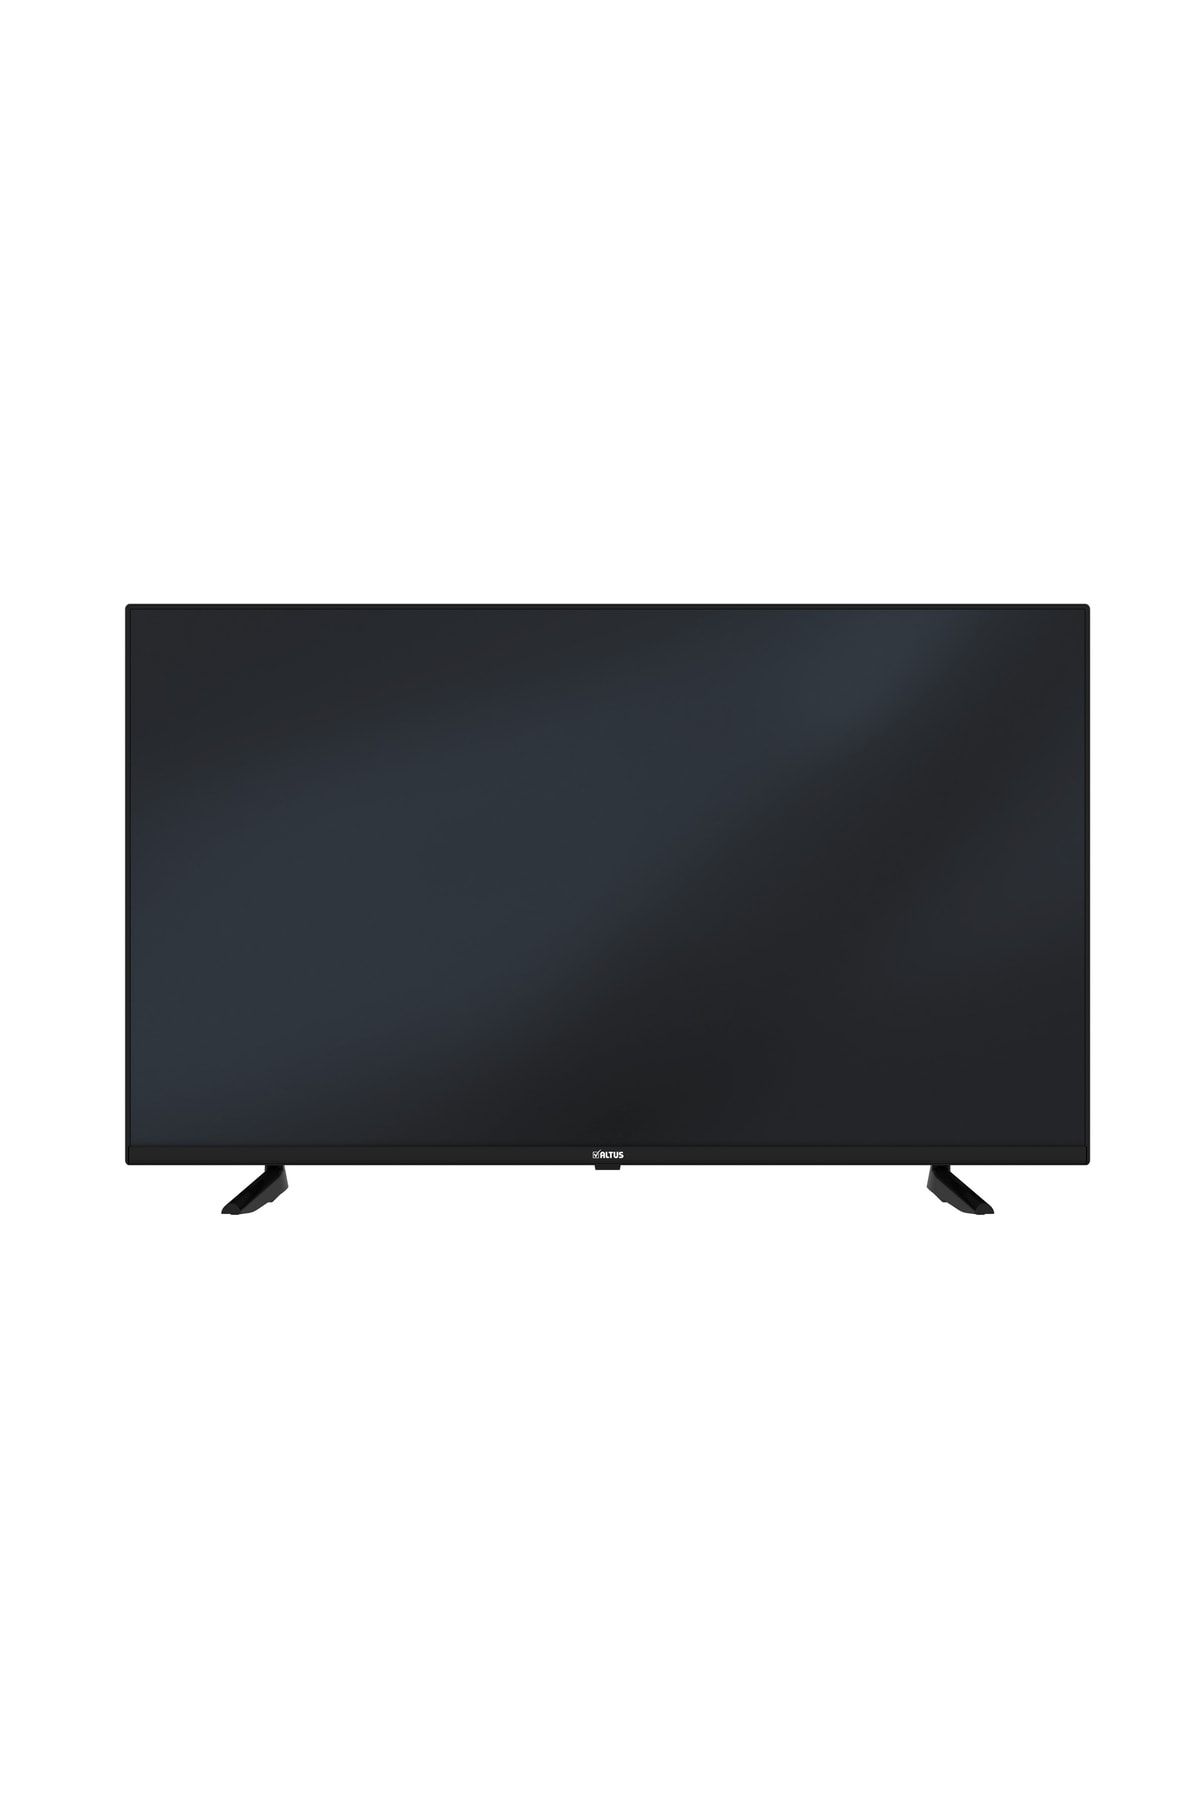 Altus Al55 Uhd 7523 4k Ultra Hd Android Smart Tv